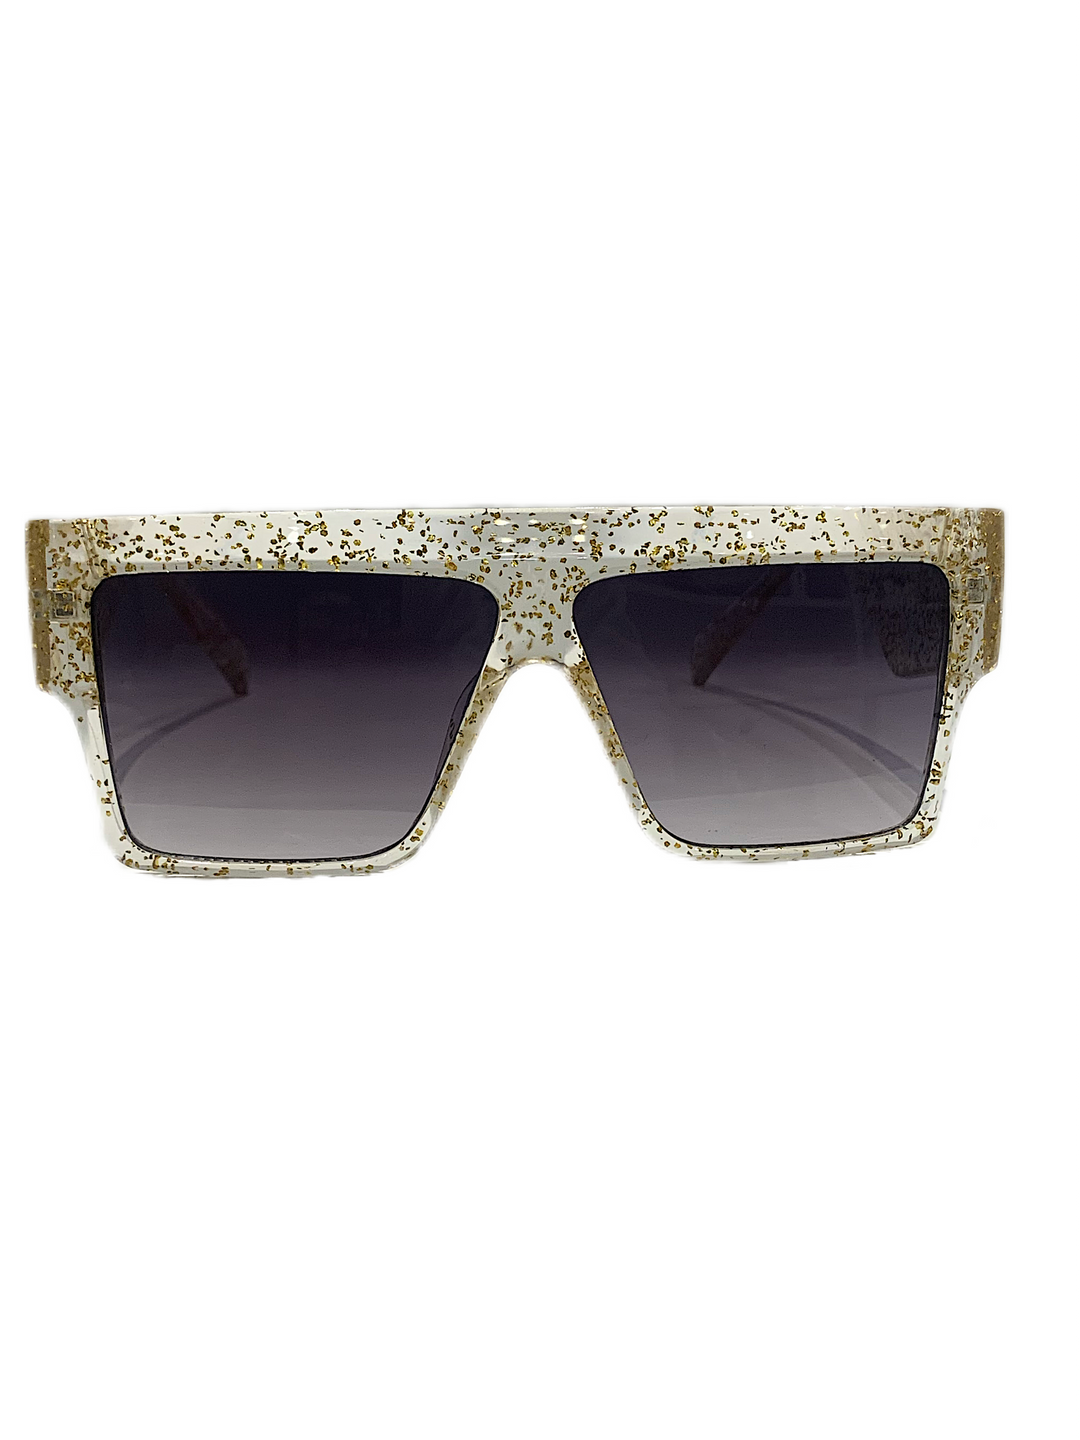 3NY - GRINSON Sunglasses